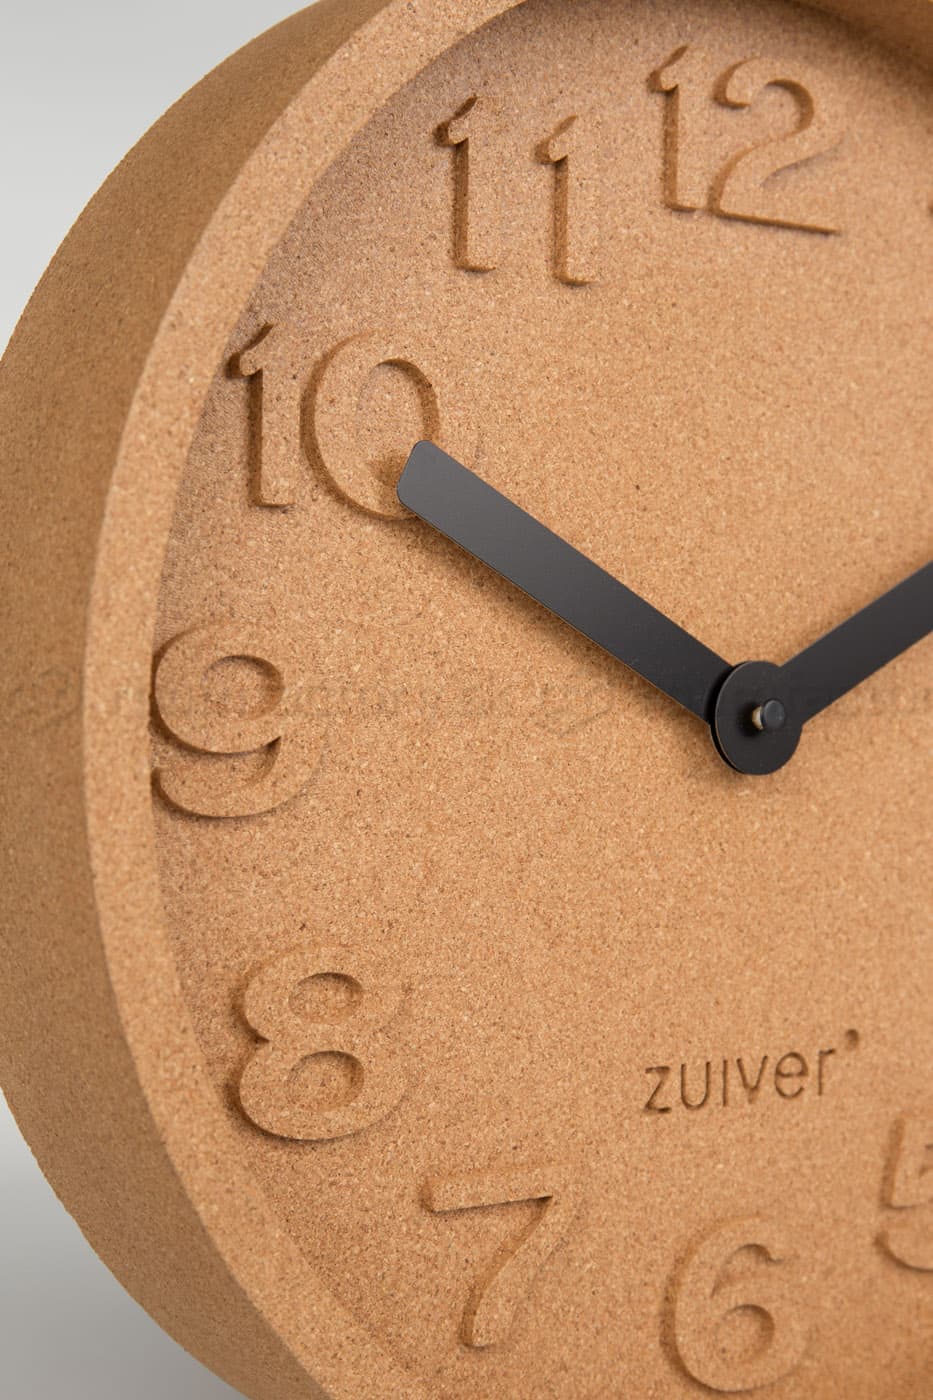 Zuiver Cork Time dizajnové hodiny na stenu